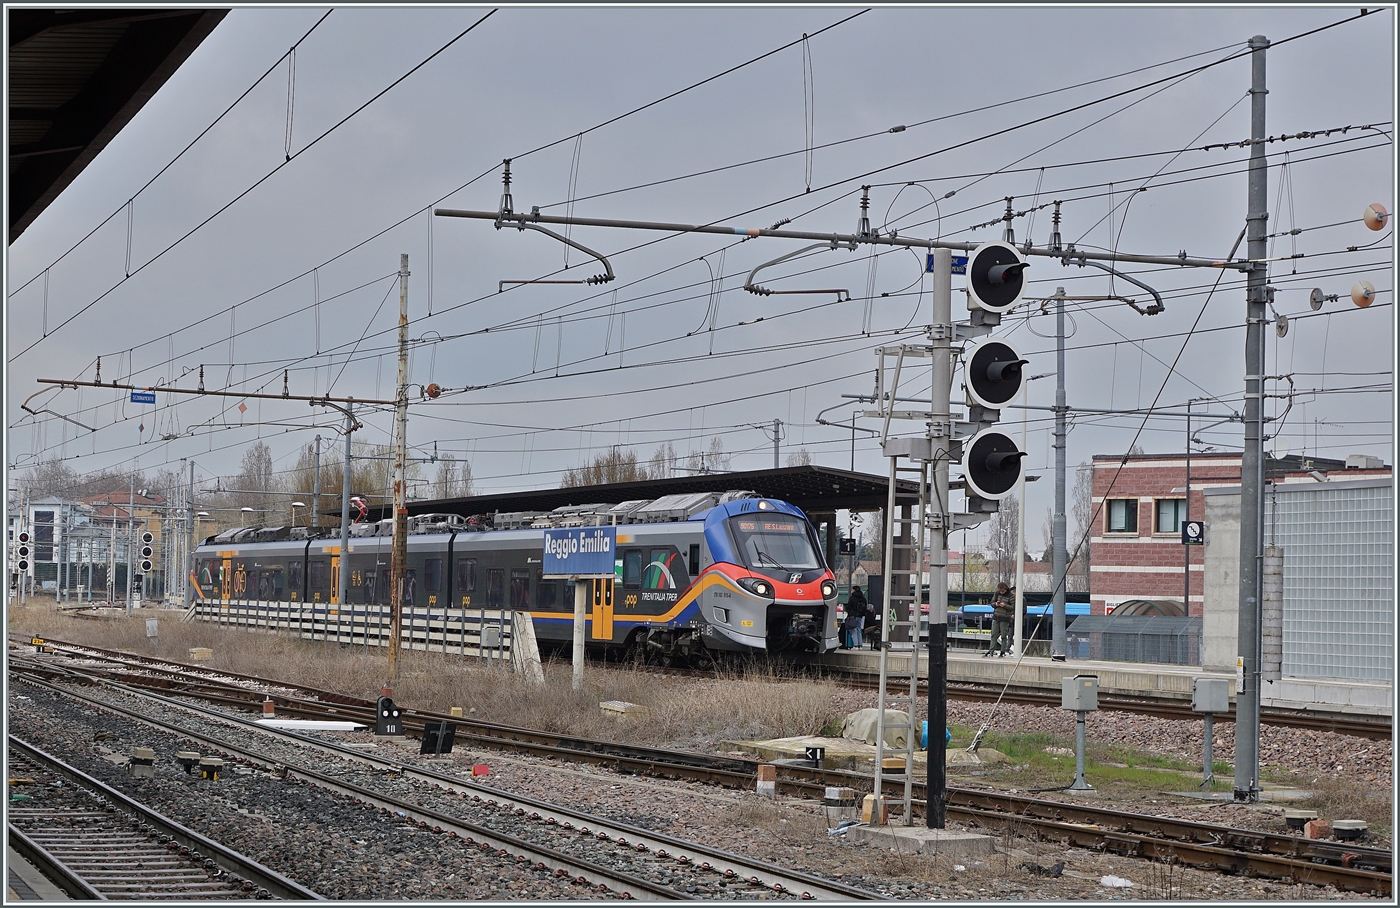 Der FS Treniatalia ETR 103-015 der Tochtergesellschaft TPER (Transporto Passeggeri Emilia Romagna) ist als Regionalzug von Guastalla nach Reggio S. Lazzaro unterwegs und hält in Reggio Emilia an einem etwas abseits gelegen Bahnsteig.

14. März 2023